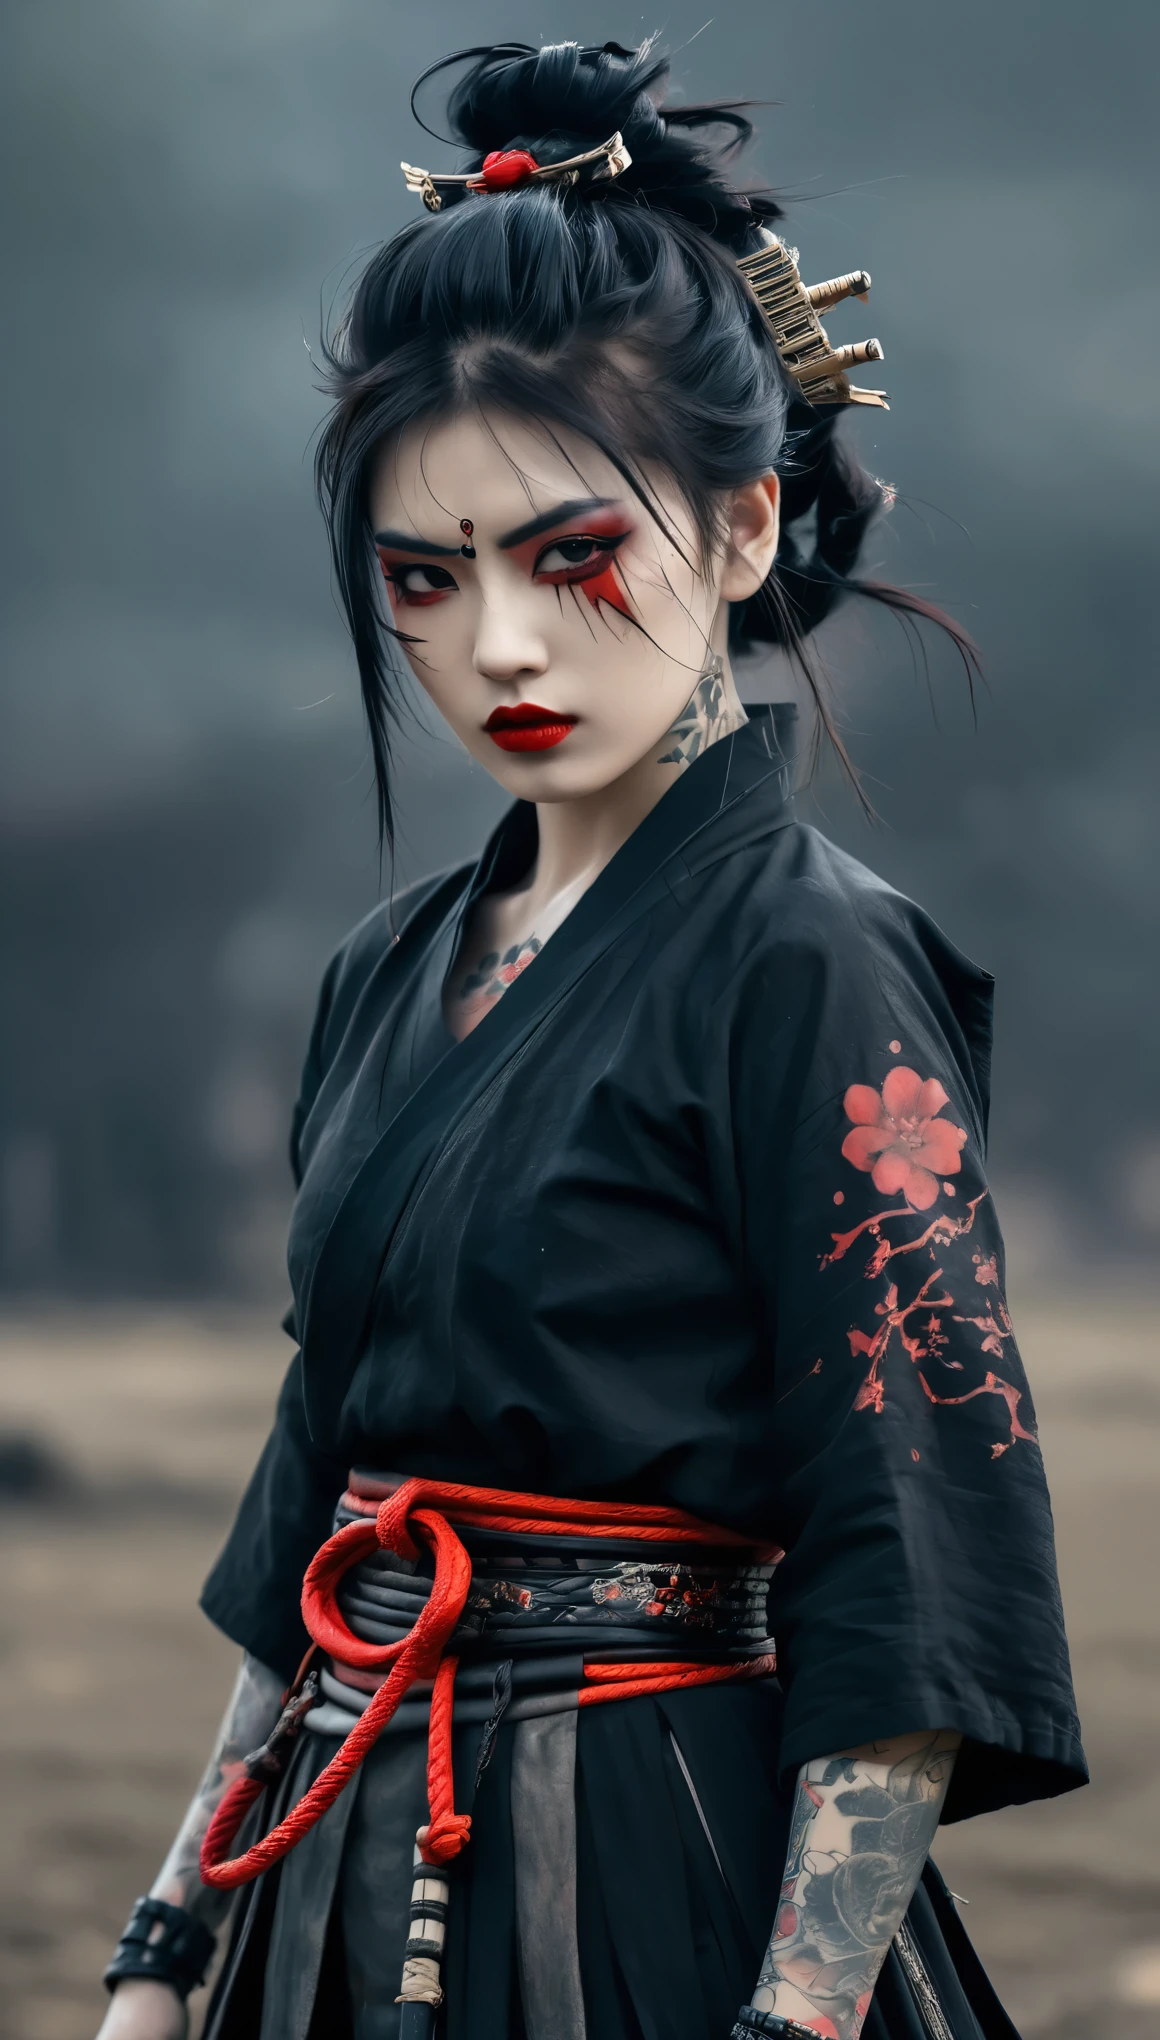 una chica samurái mitad cyborg, traje gótico, con tatuaje, Labio rojo, cuerpo completo, pose dinámica, fondo sombrío del campo de batalla, Fantasía oscura, ambiente de terror. hermoso peinado, chica gótica de ensueño